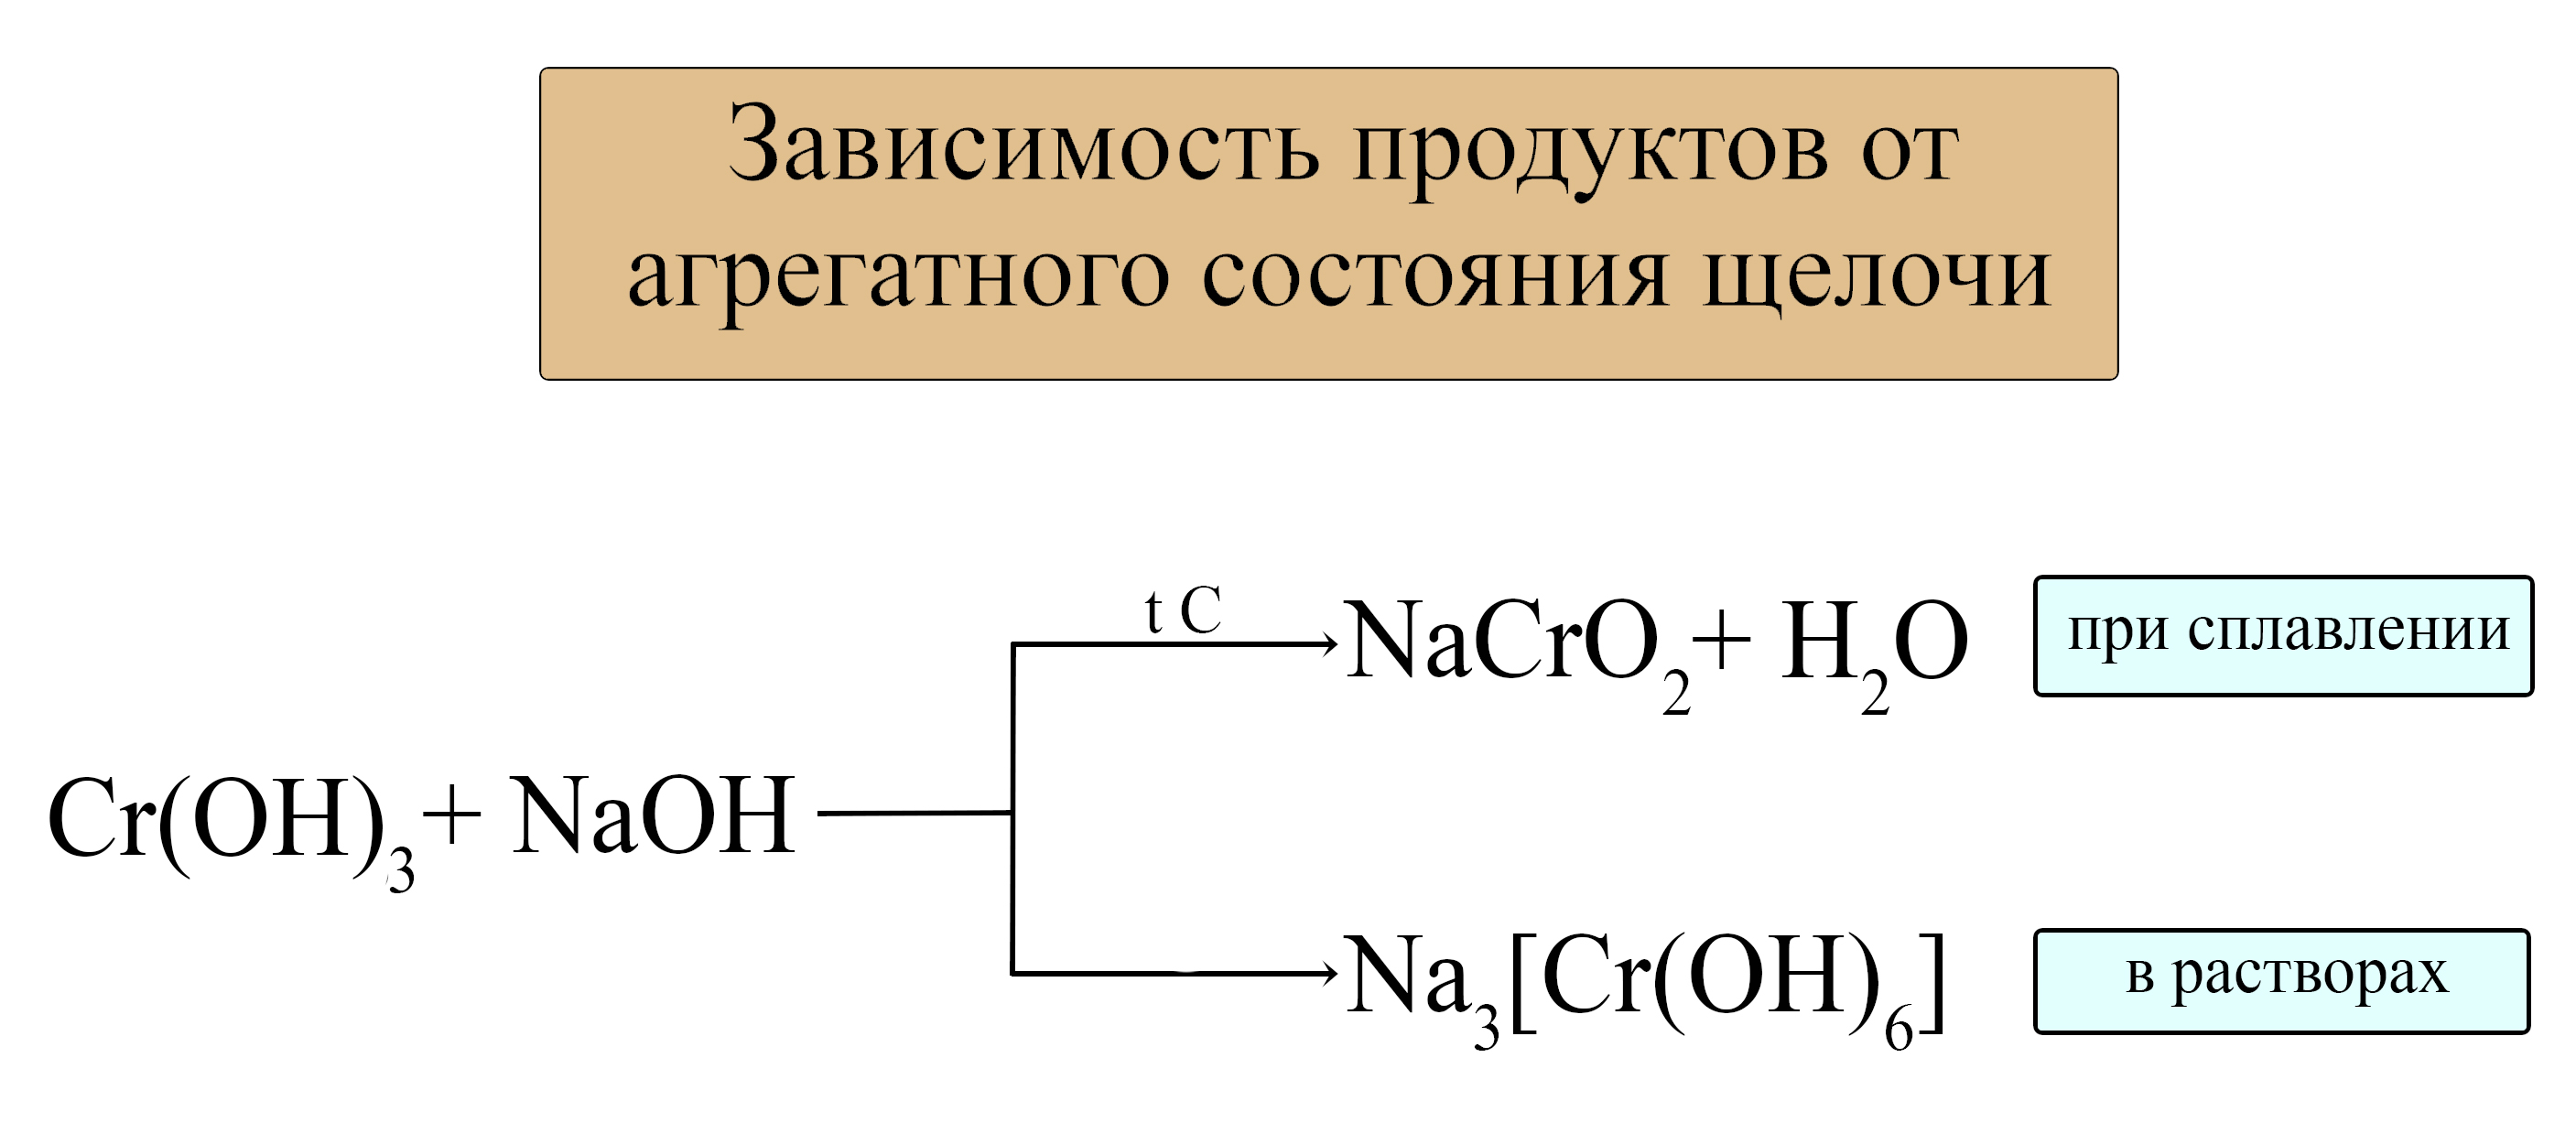 Ba oh 2 амфотерный гидроксид. Амфотерные гидроксиды сплавление. Амфотерный гидроксид и щелочь реакция. CR Oh 3 амфотерный гидроксид. Химические свойства амфотерных гидроксидов.